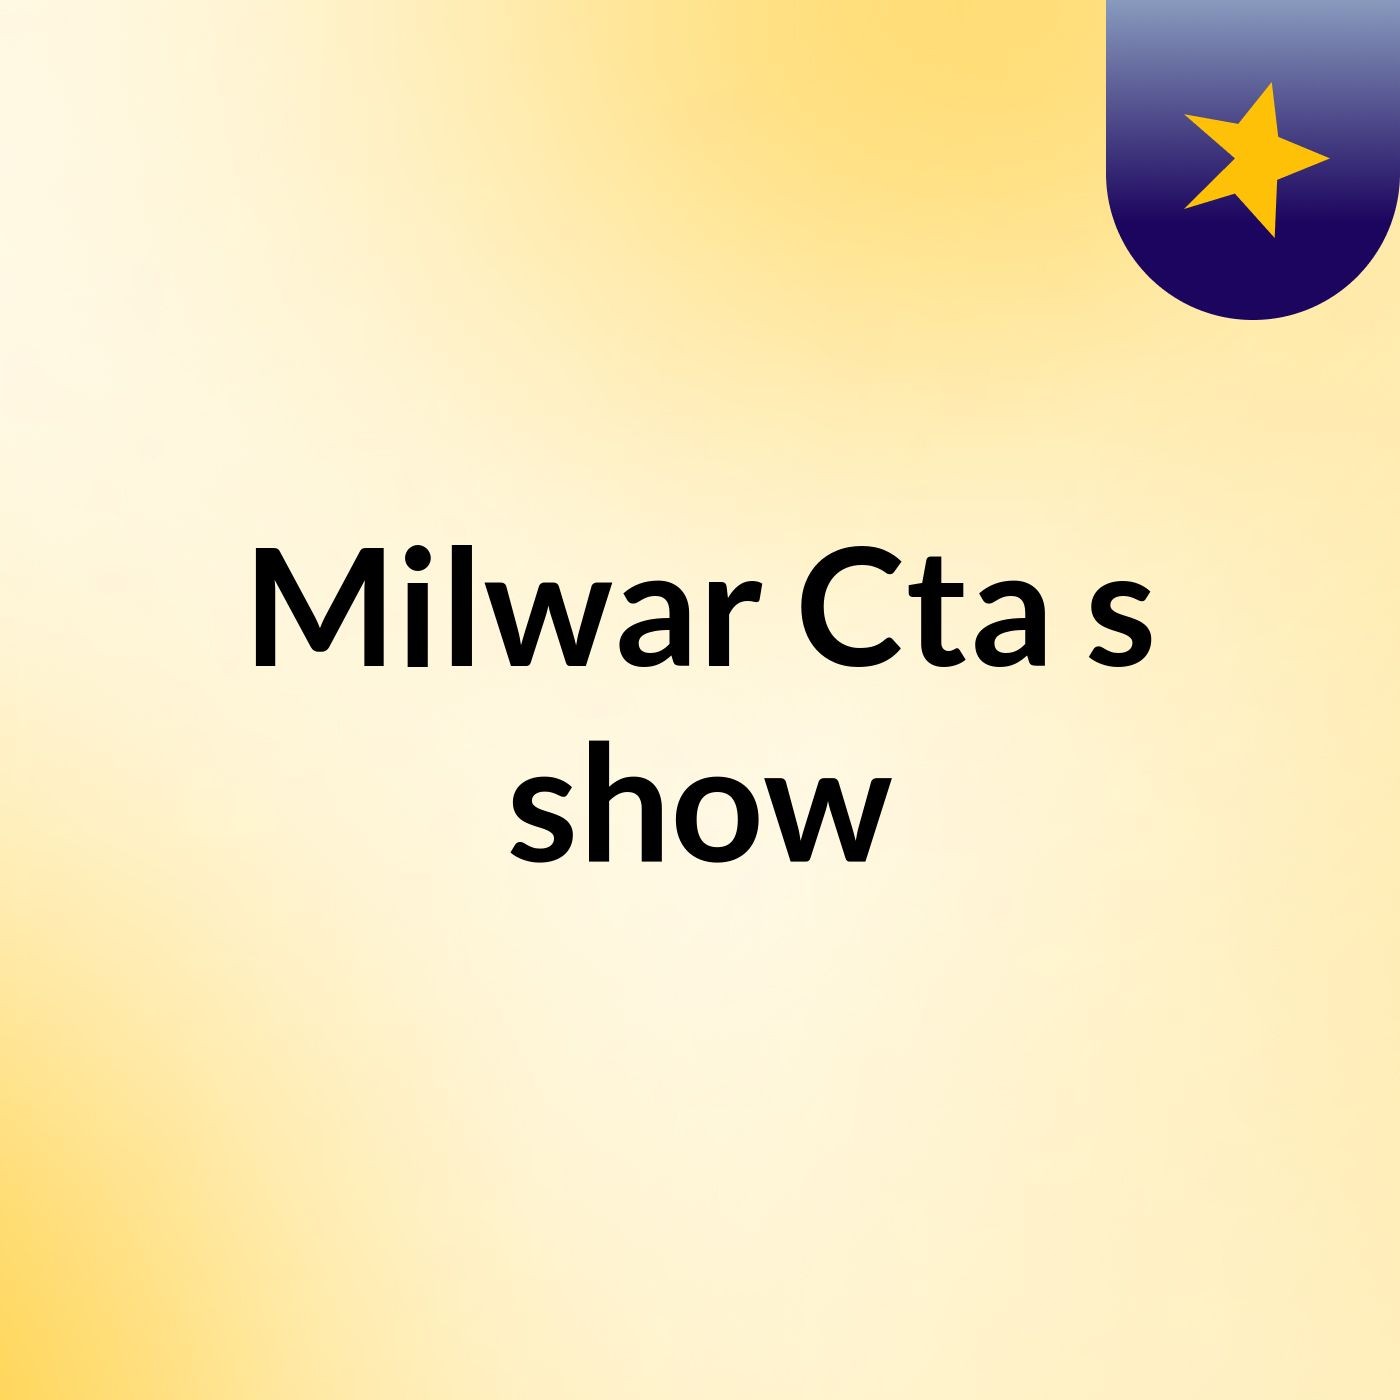 Milwar Cta's show